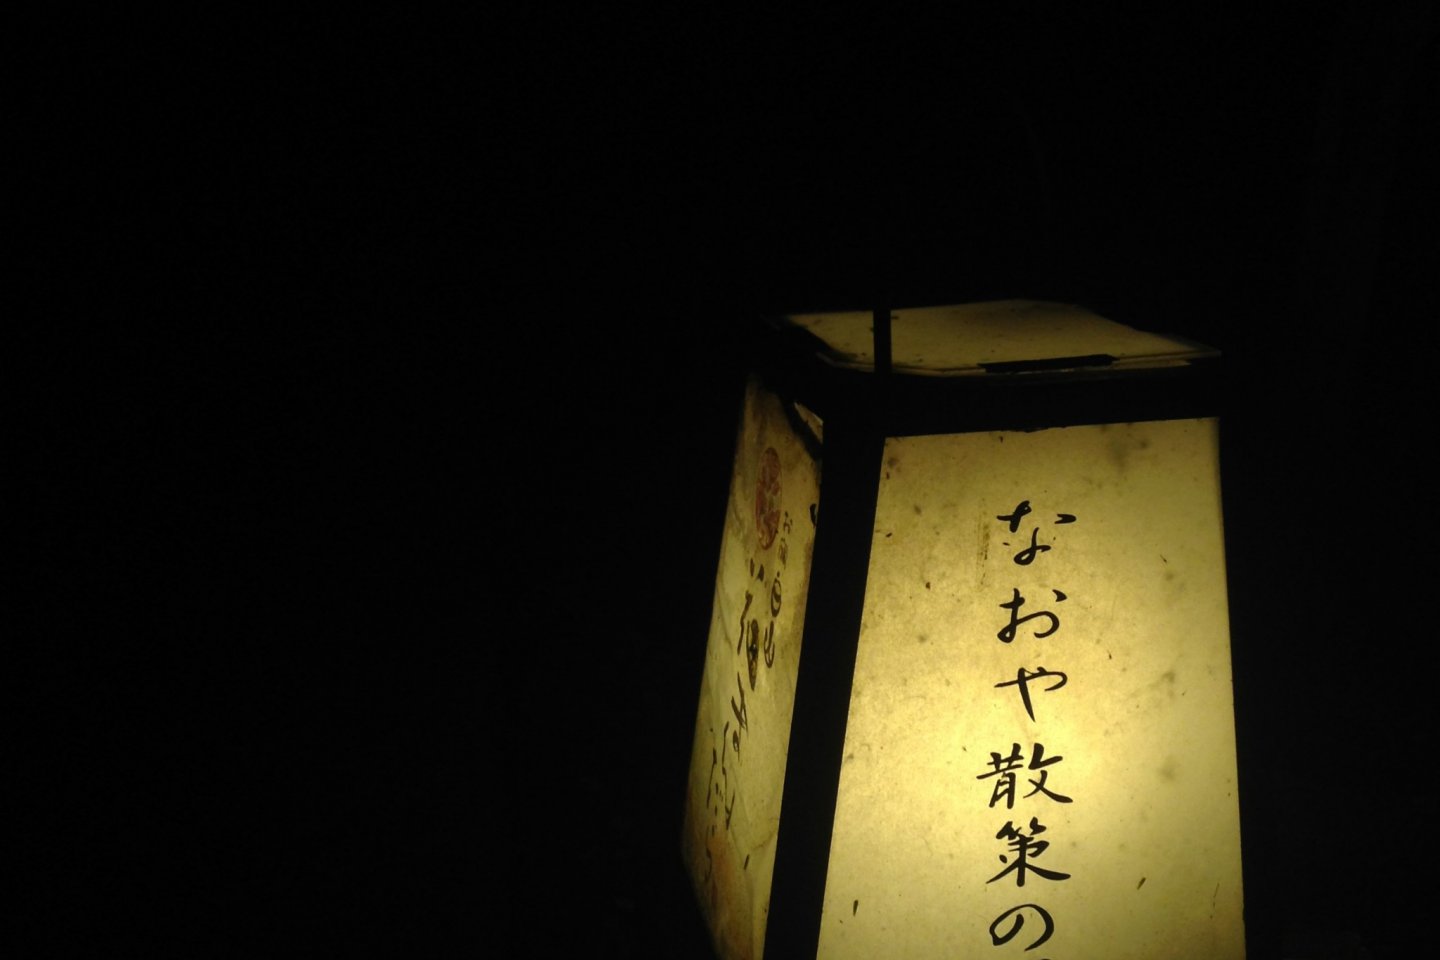 แสงจากเจ้าหิ่งห้อยตัวน้อยที่กระพริบแข่งกับแสงไฟอันแรงจ้าที่ Kinosaki onsen
 